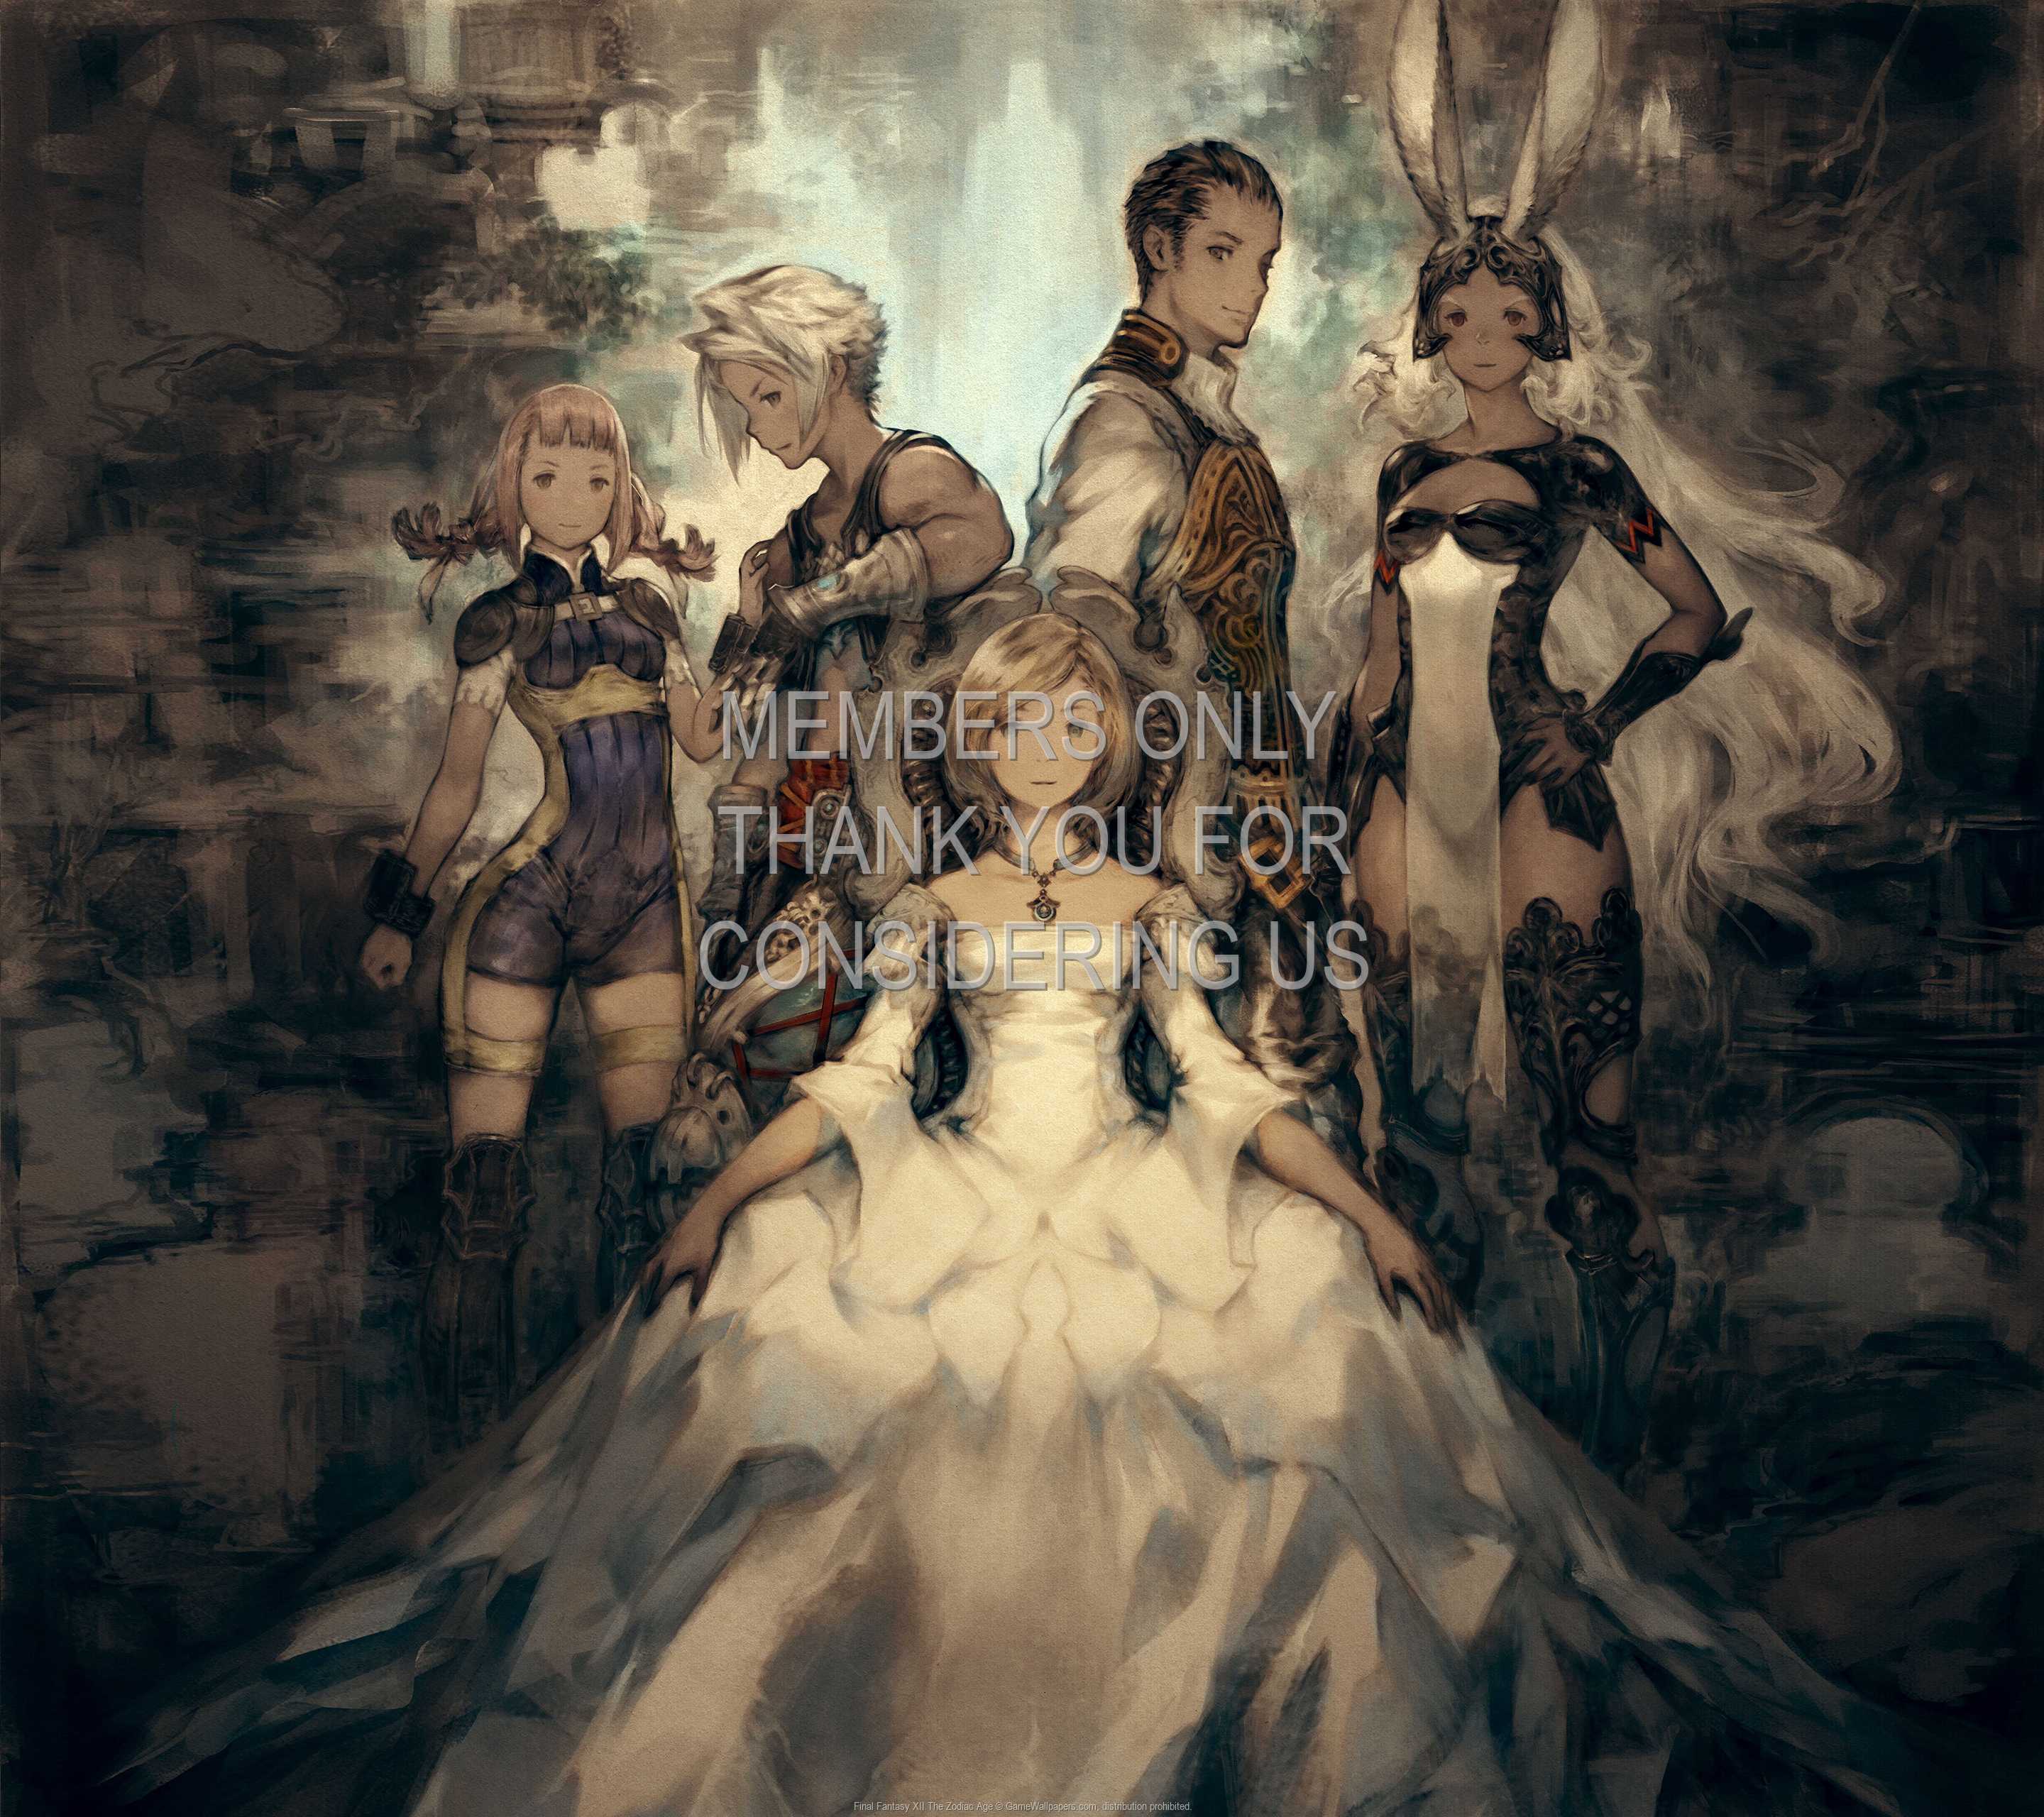 Final Fantasy XII: The Zodiac Age 1440p Horizontal Mobile fond d'cran 01